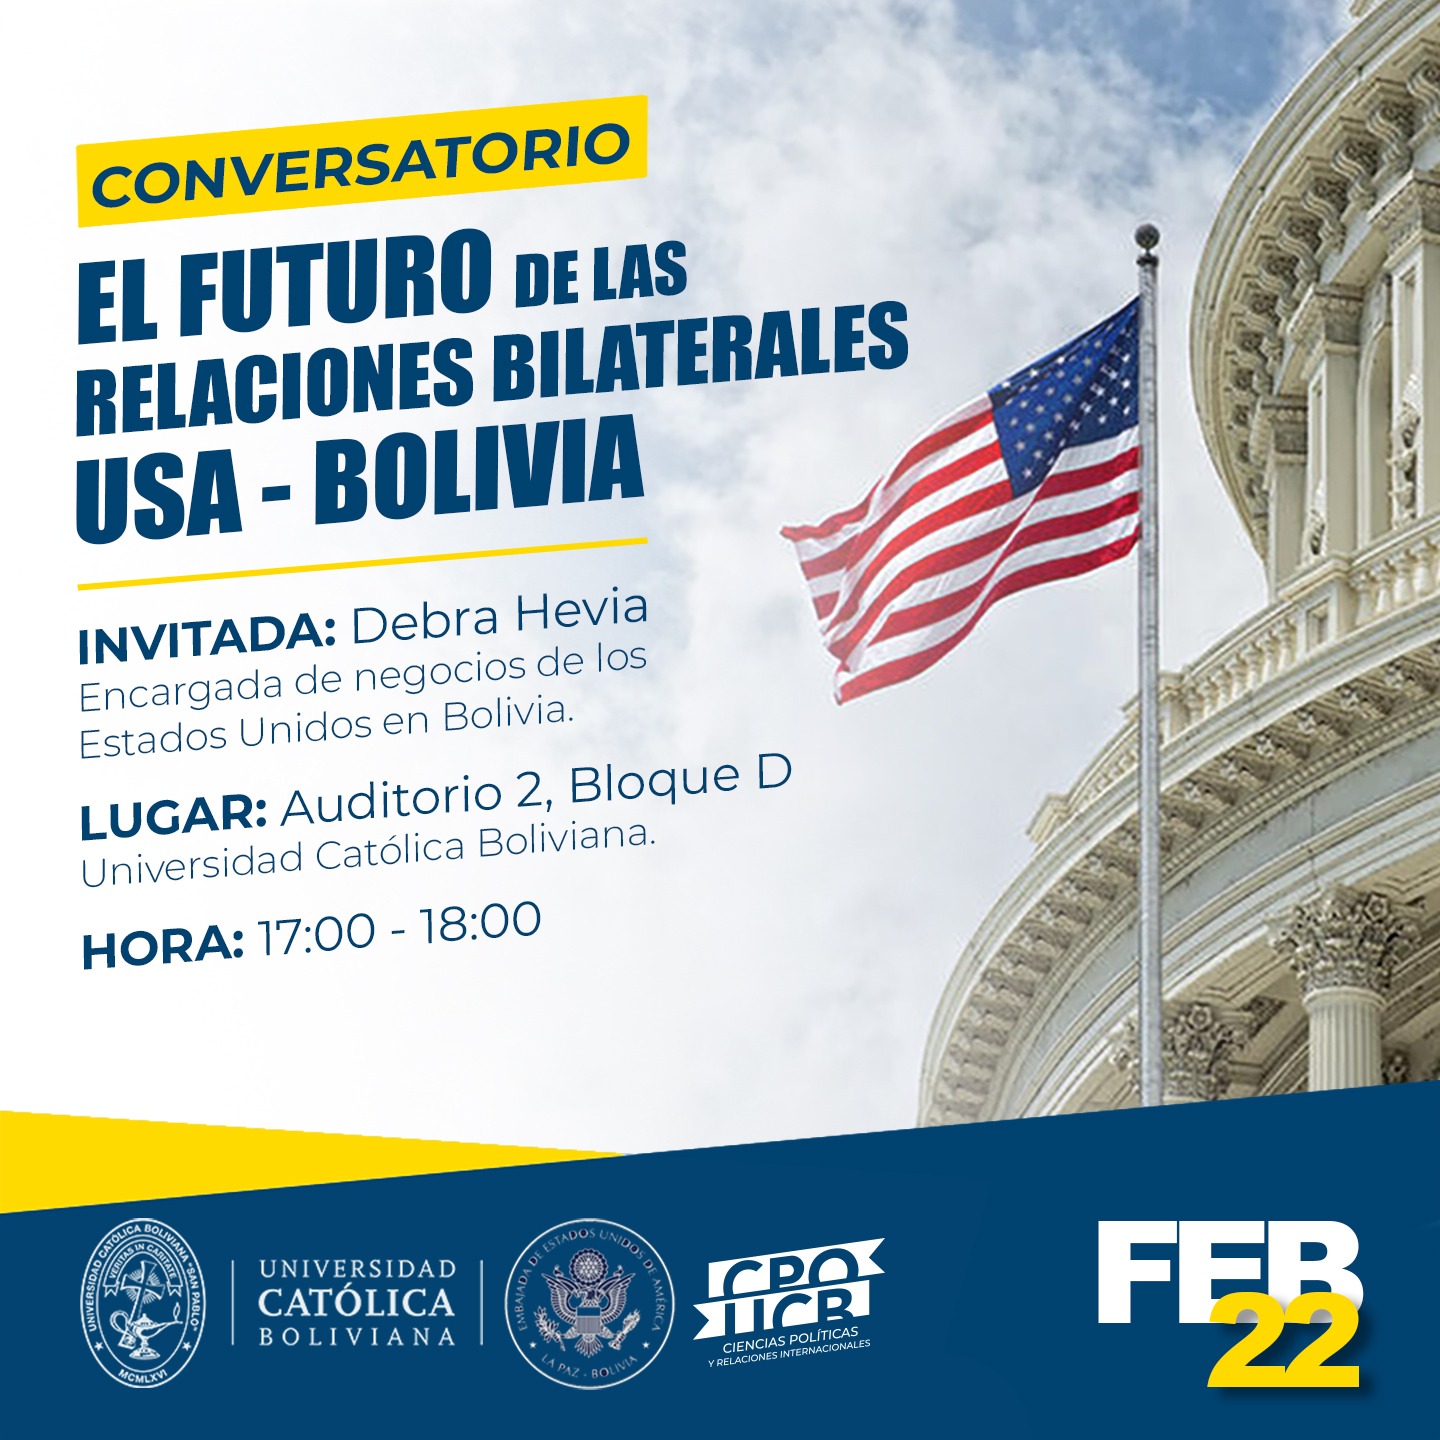 Conversatorio: “El Futuro de la relaciones Bilaterales USA-Bolivia”.